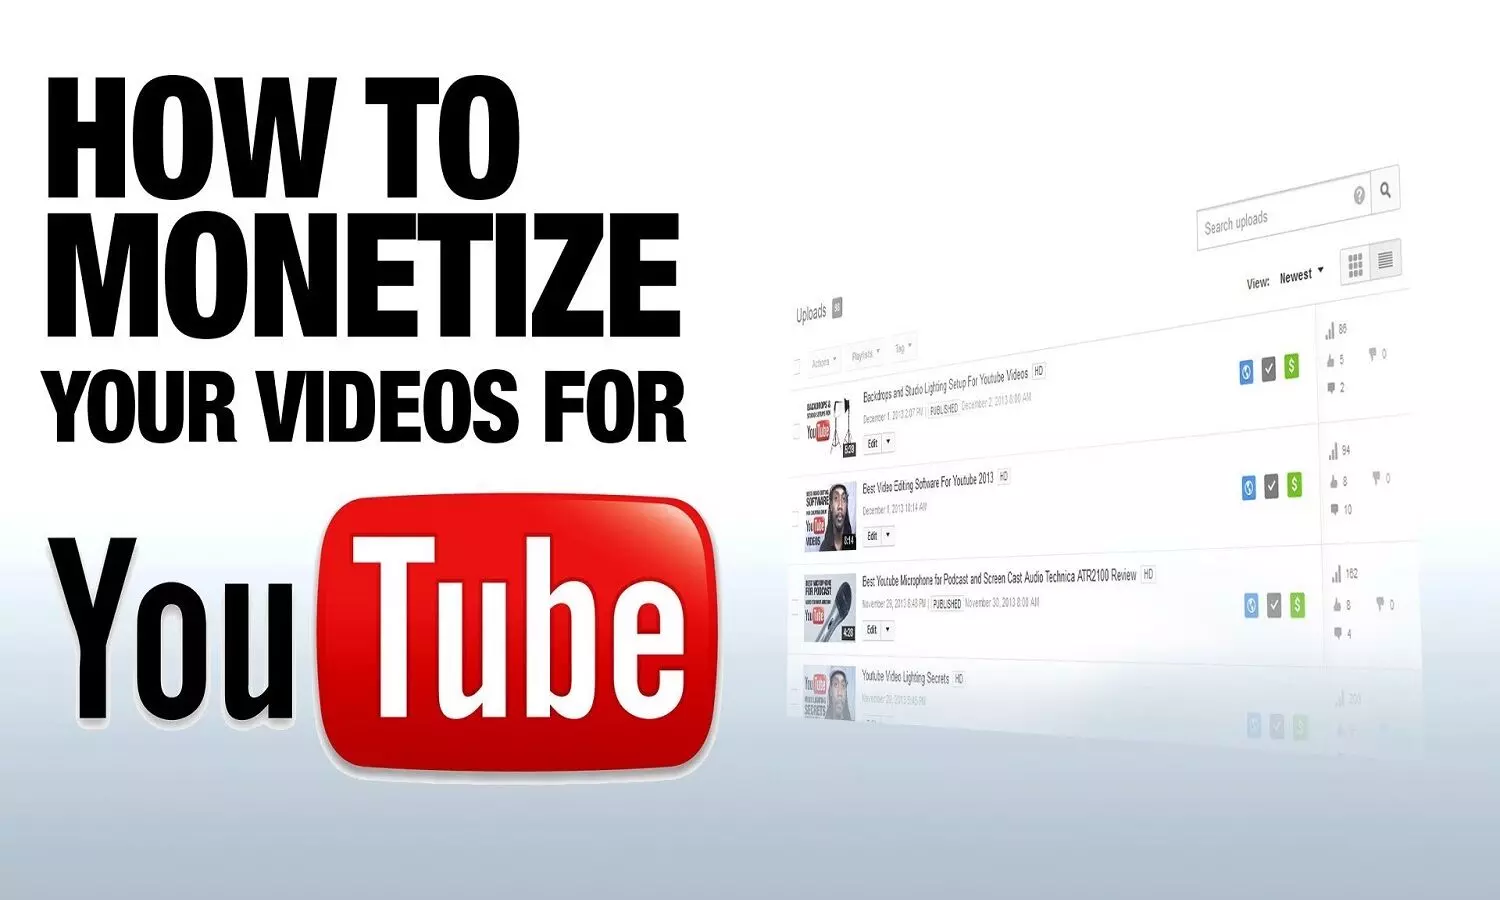 How To Earn From YouTube: यूट्यूब से पैसा कमाने का आसान तरीका ये है